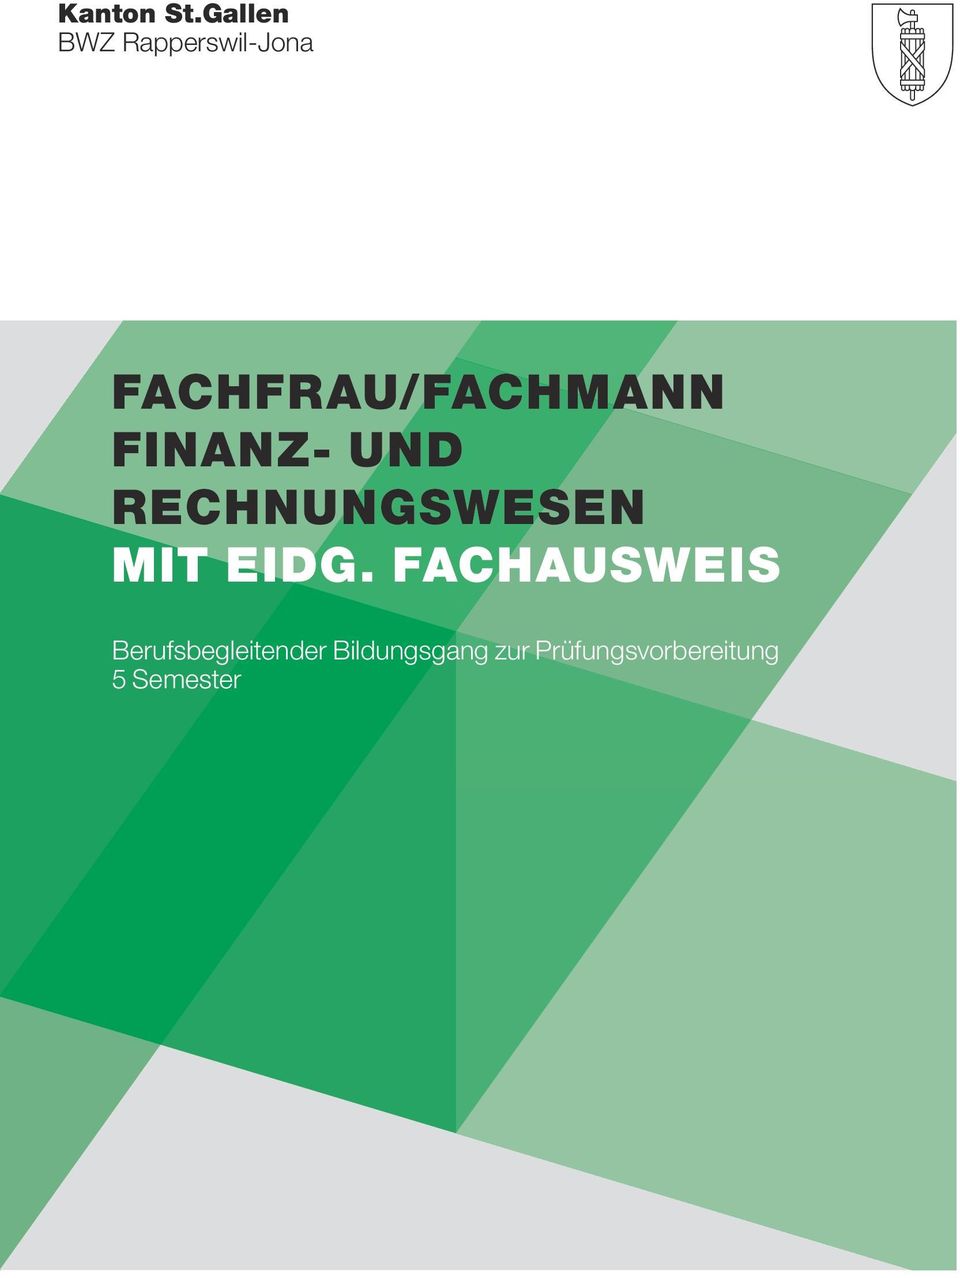 FACHFRAU/FACHMANN FINANZ- UND